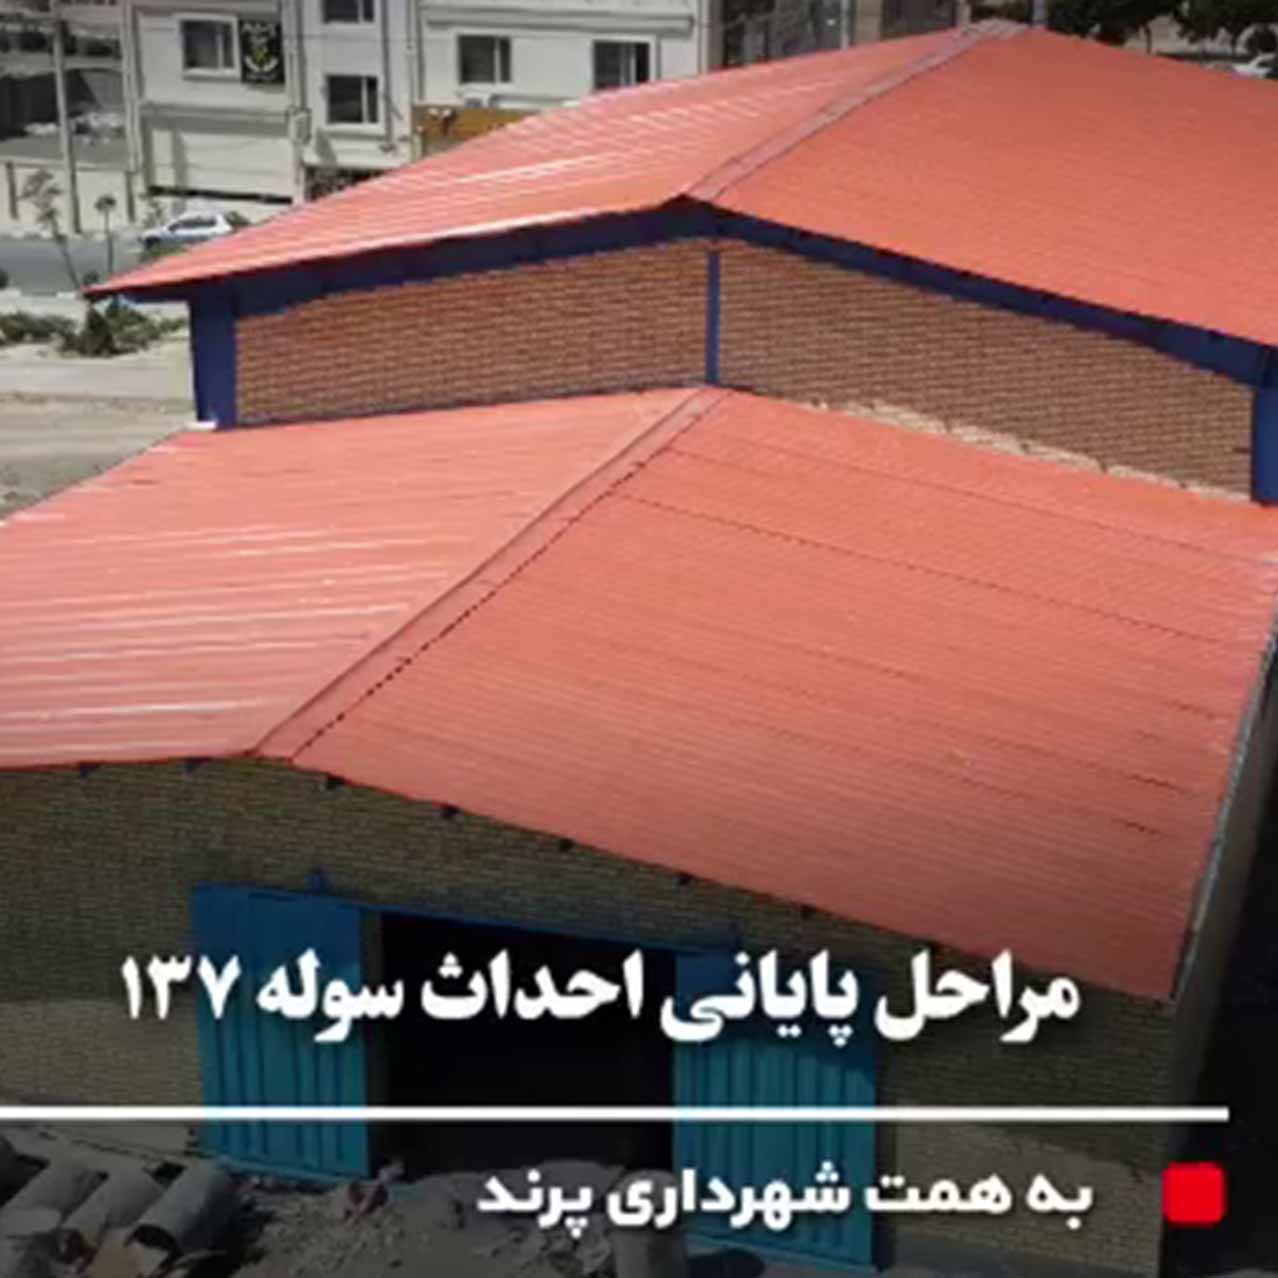 یک گام تا افتتاح سوله 137 شهرداری پرند